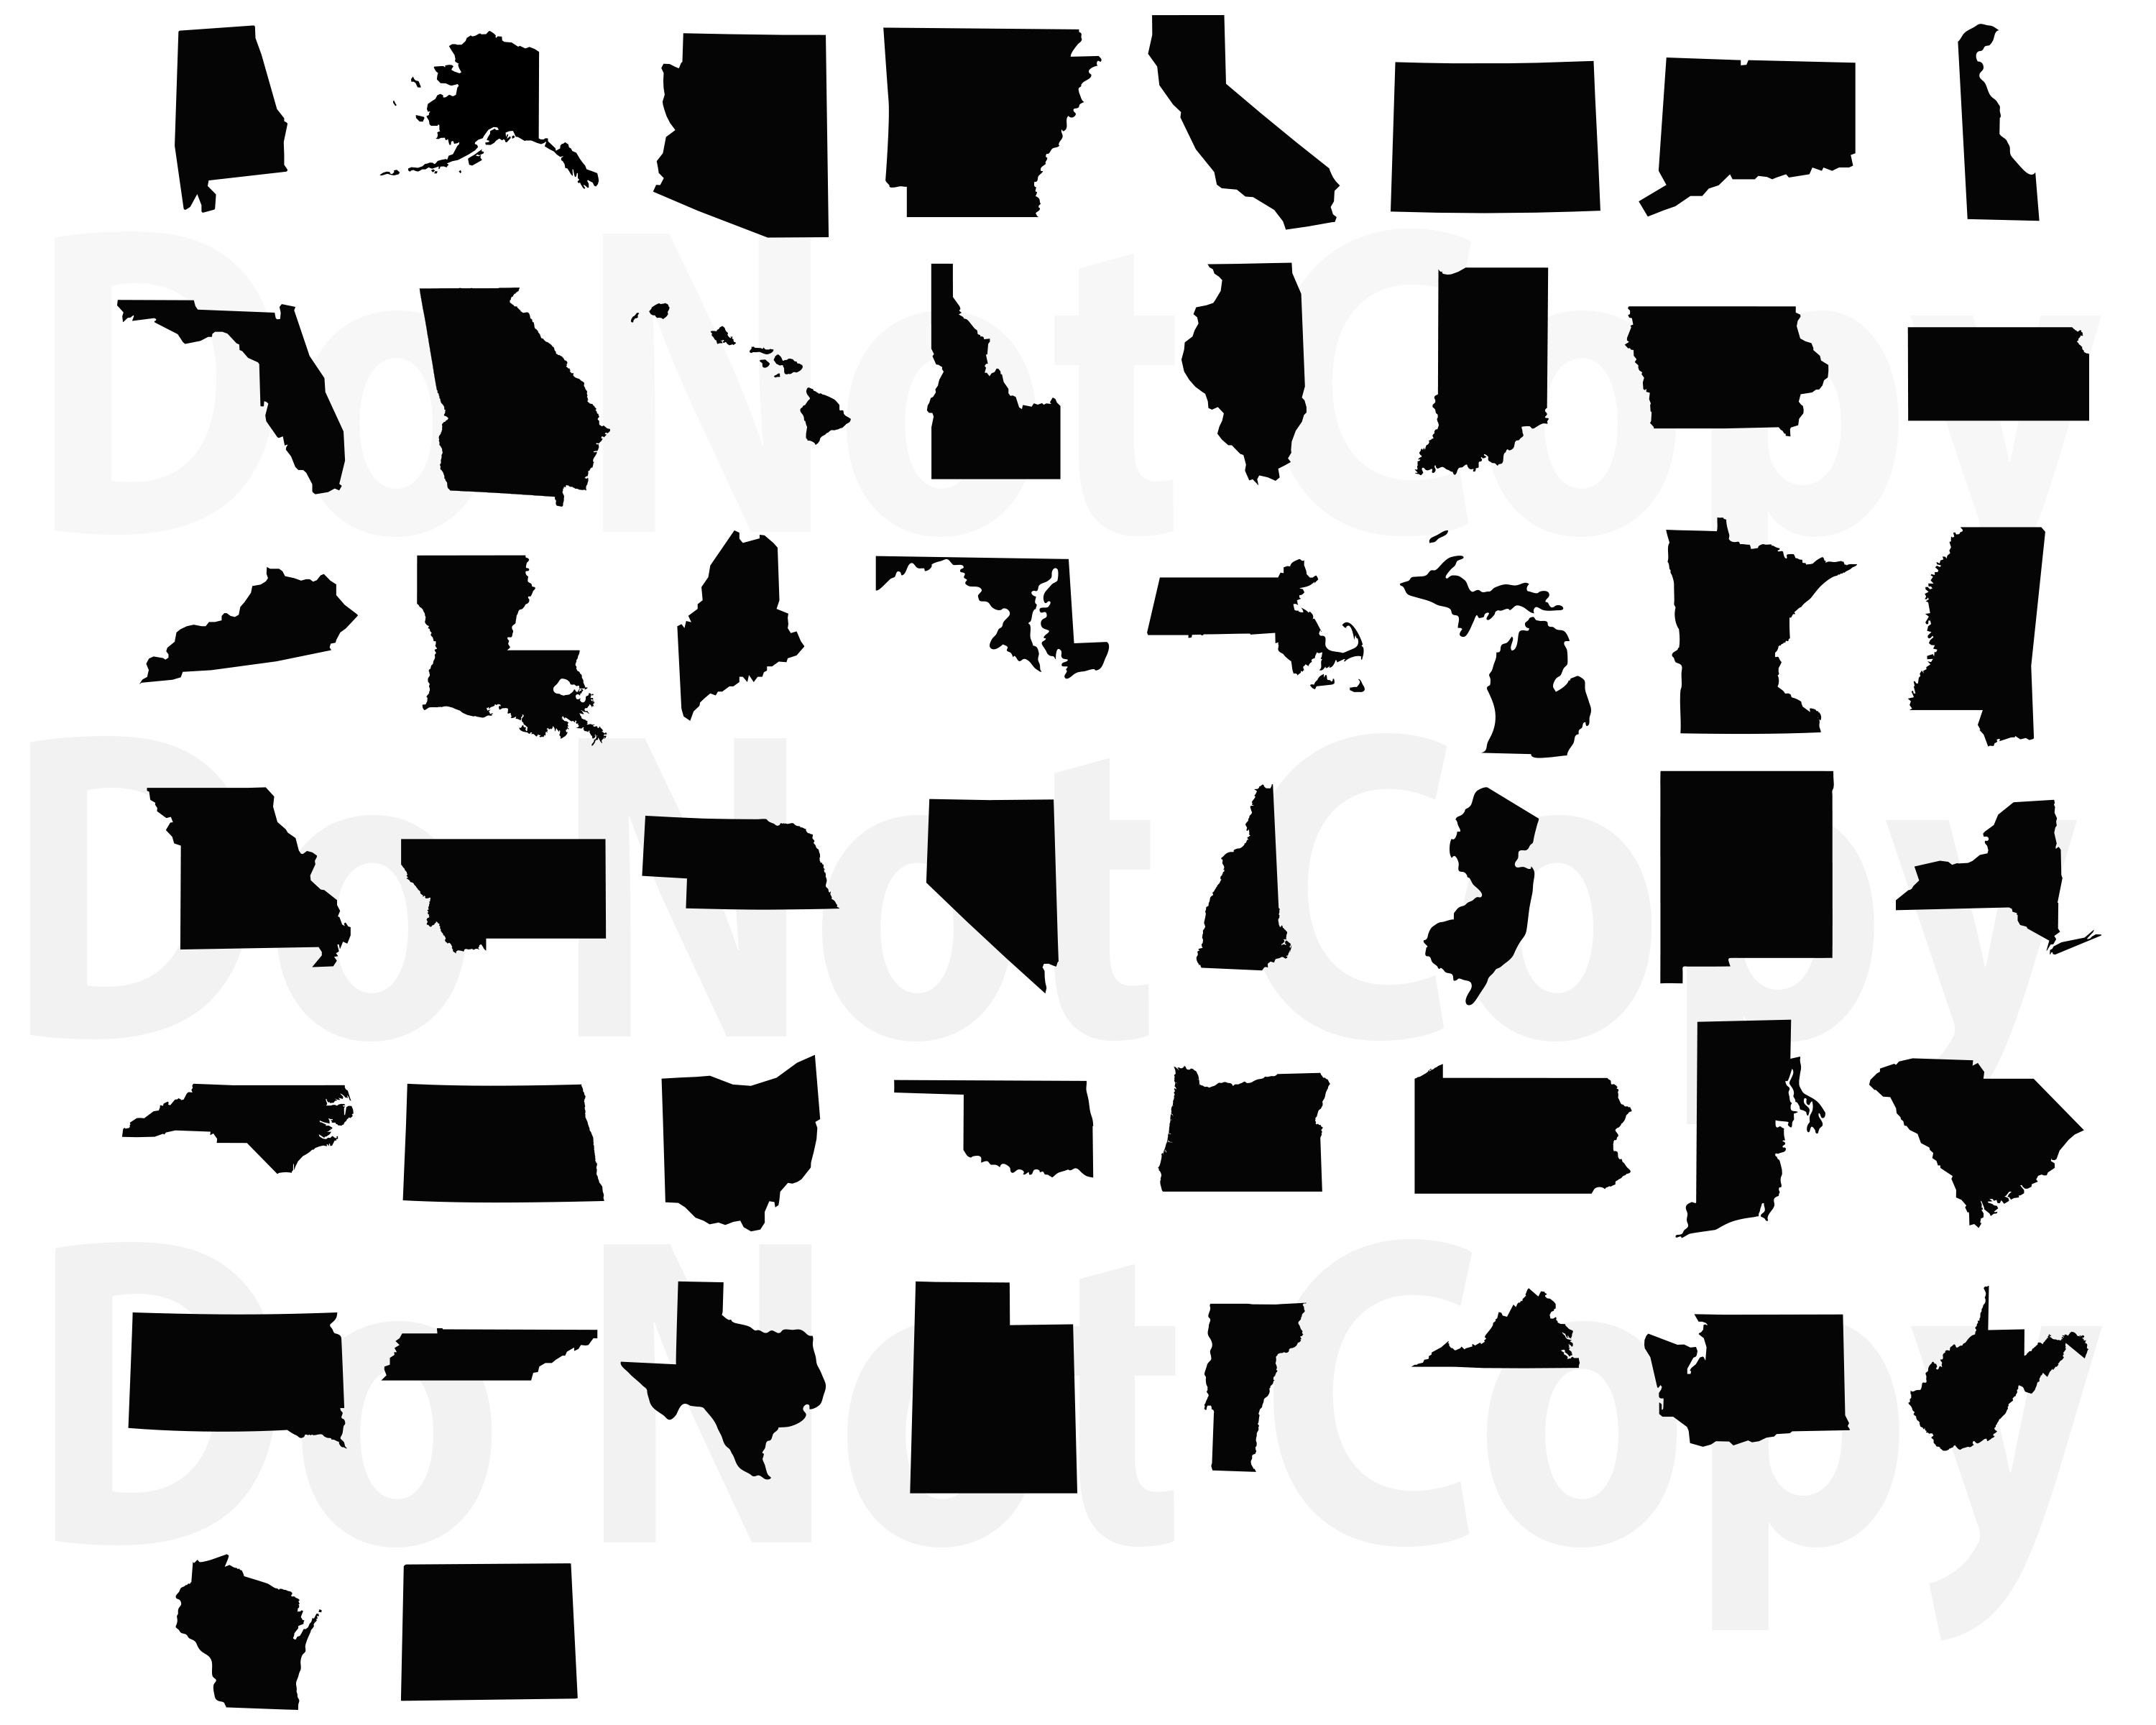 50-states-svg-bundle-outline-united-states-maps-svg-usa-etsy-images